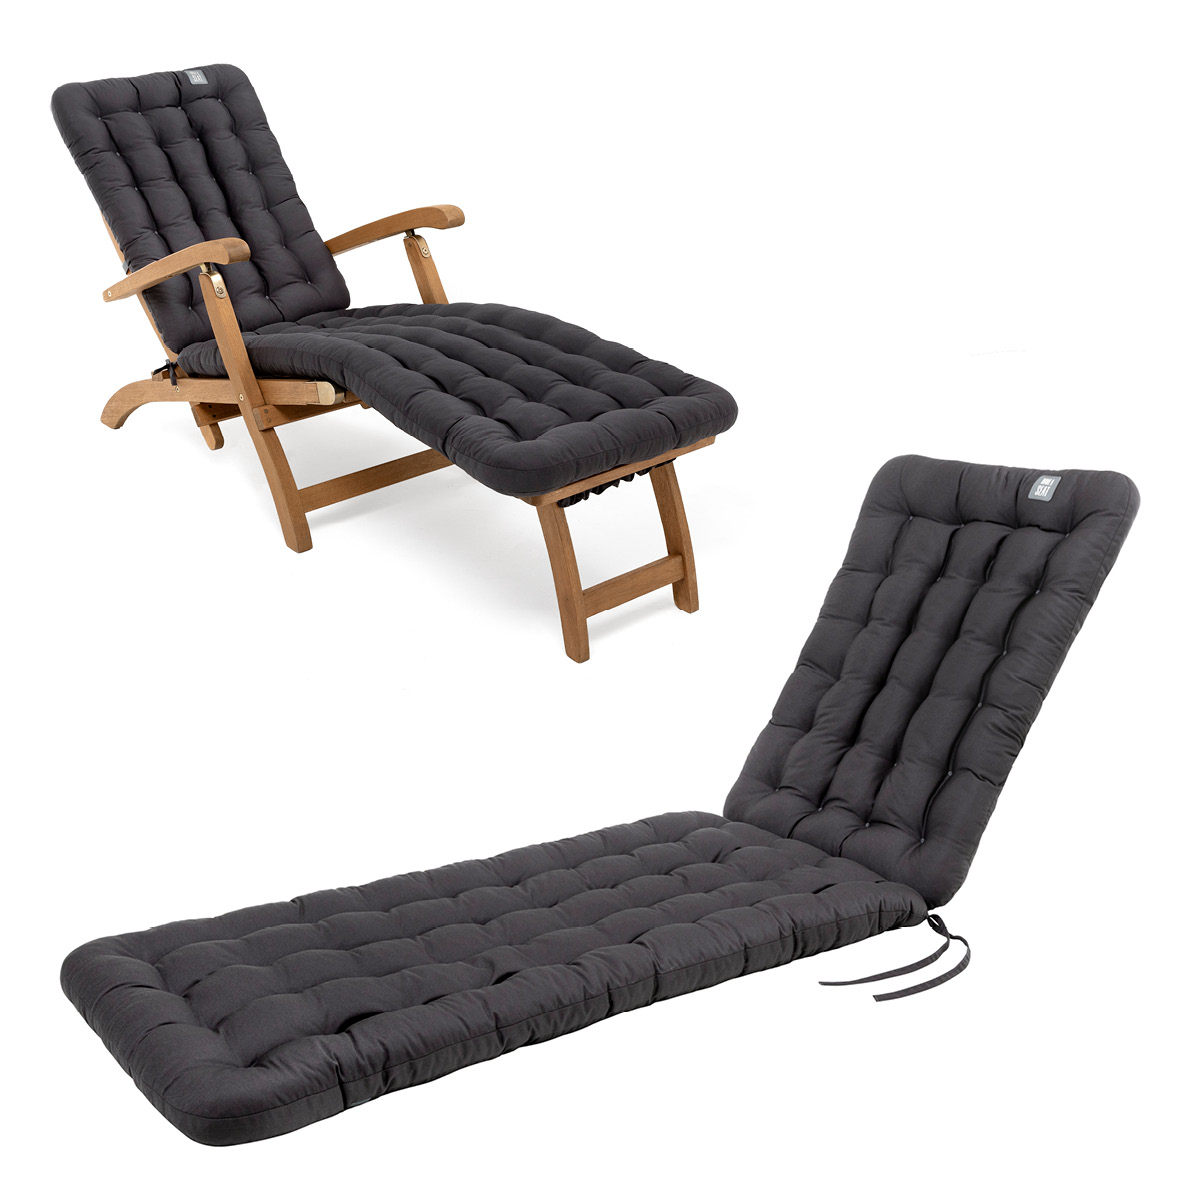 Cuscino per sedia a sdraio | 190x50 cm | Grigio / Antracite